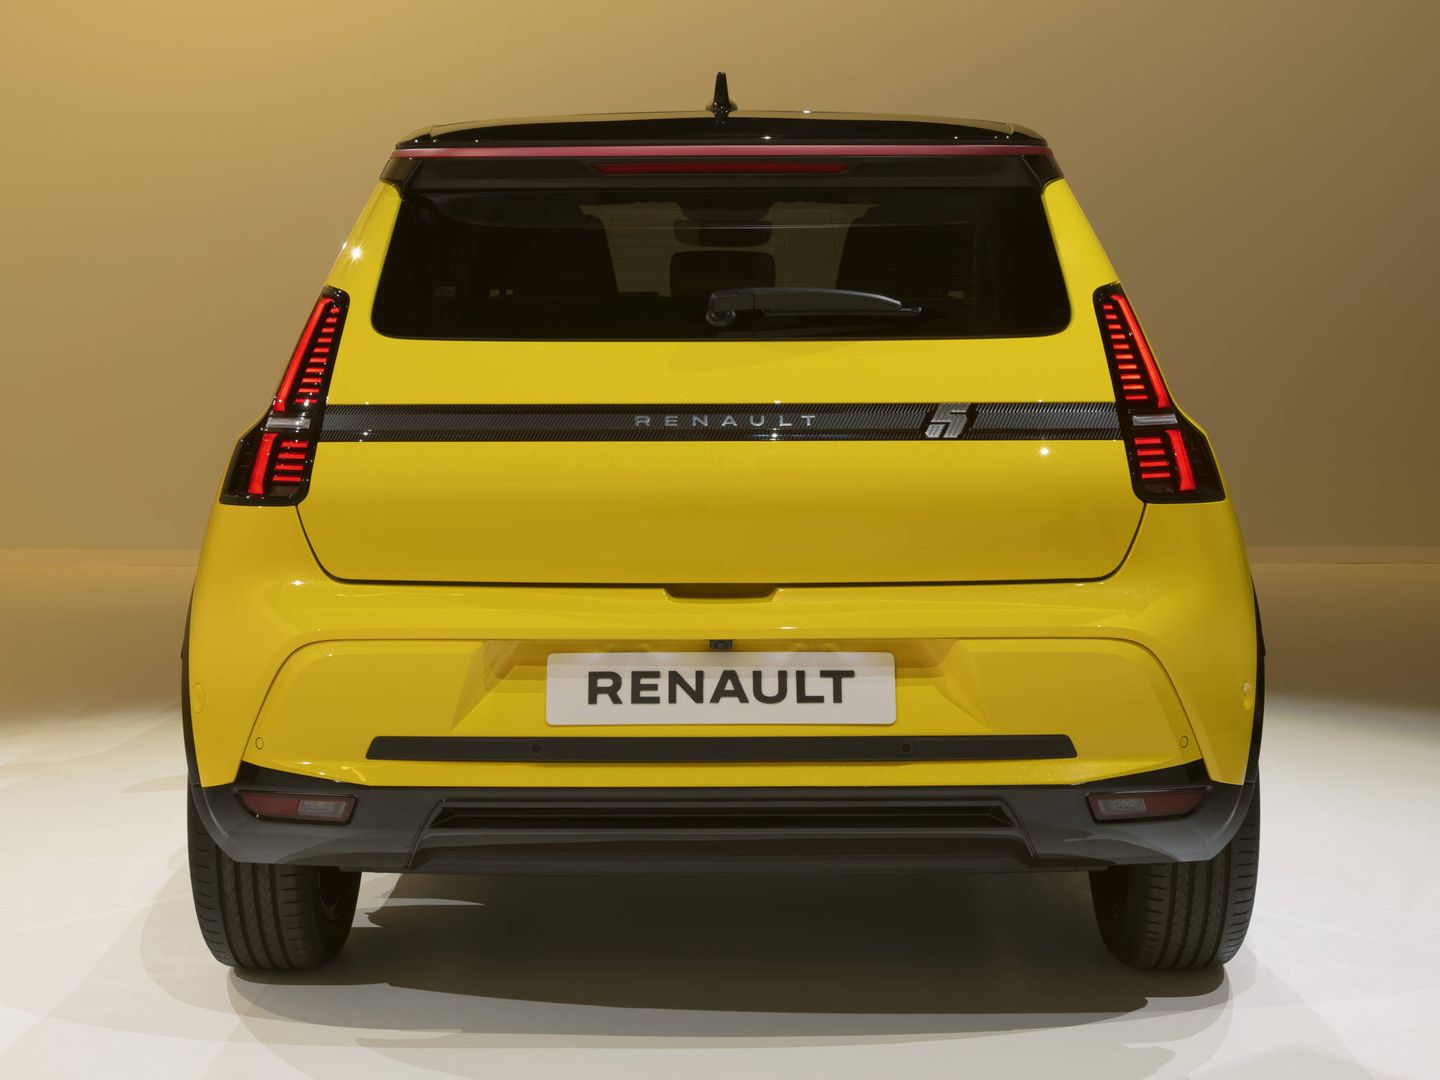 Los pilotos traseros son verticales y están unidos por una tira donde aparece 'Renault 5'.